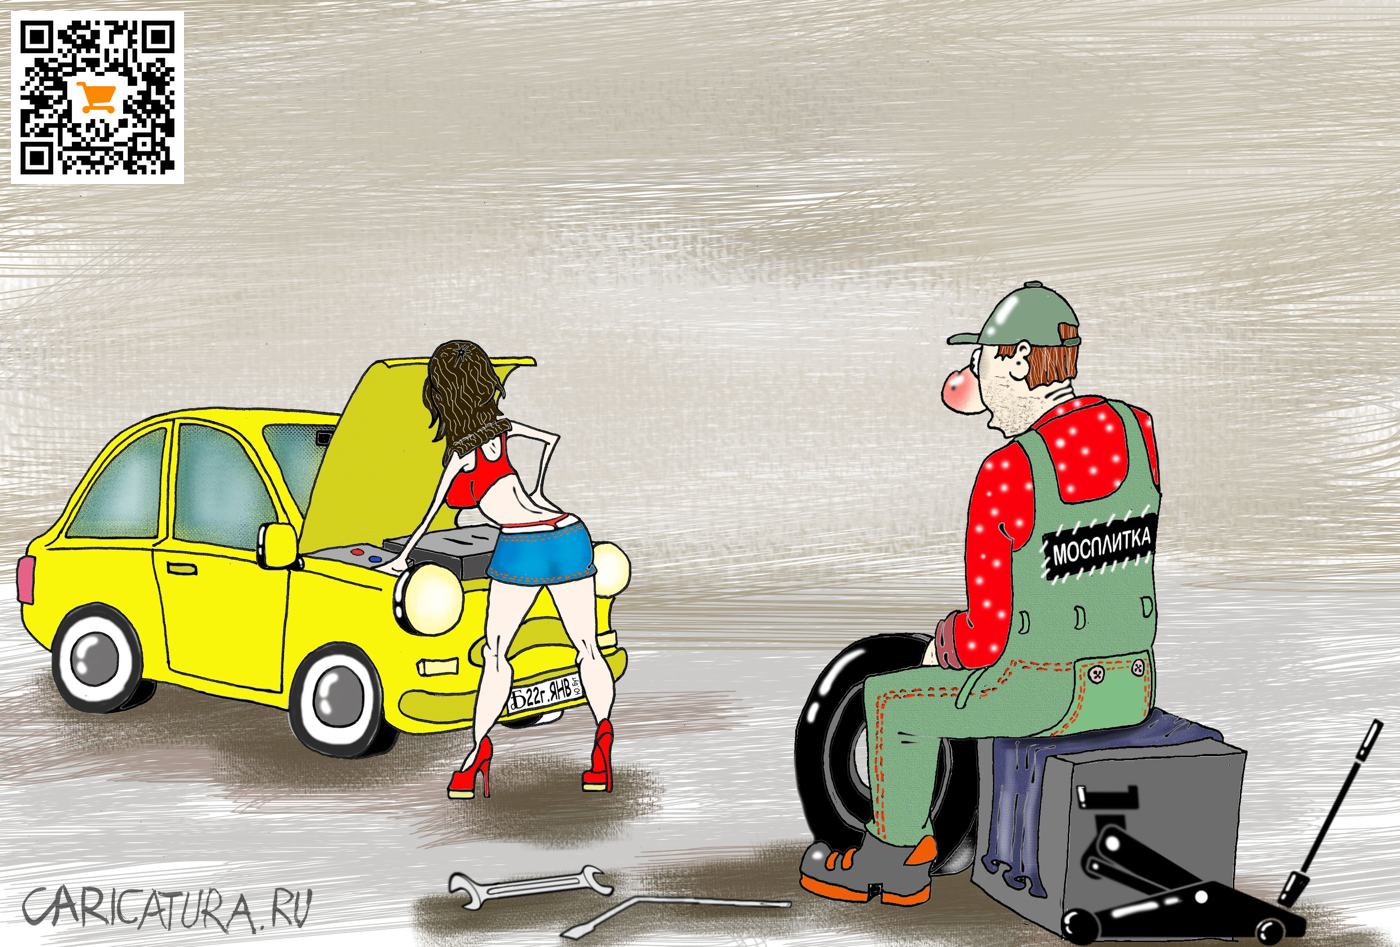 Карикатура "Про механика. Возбуждение", Борис Демин